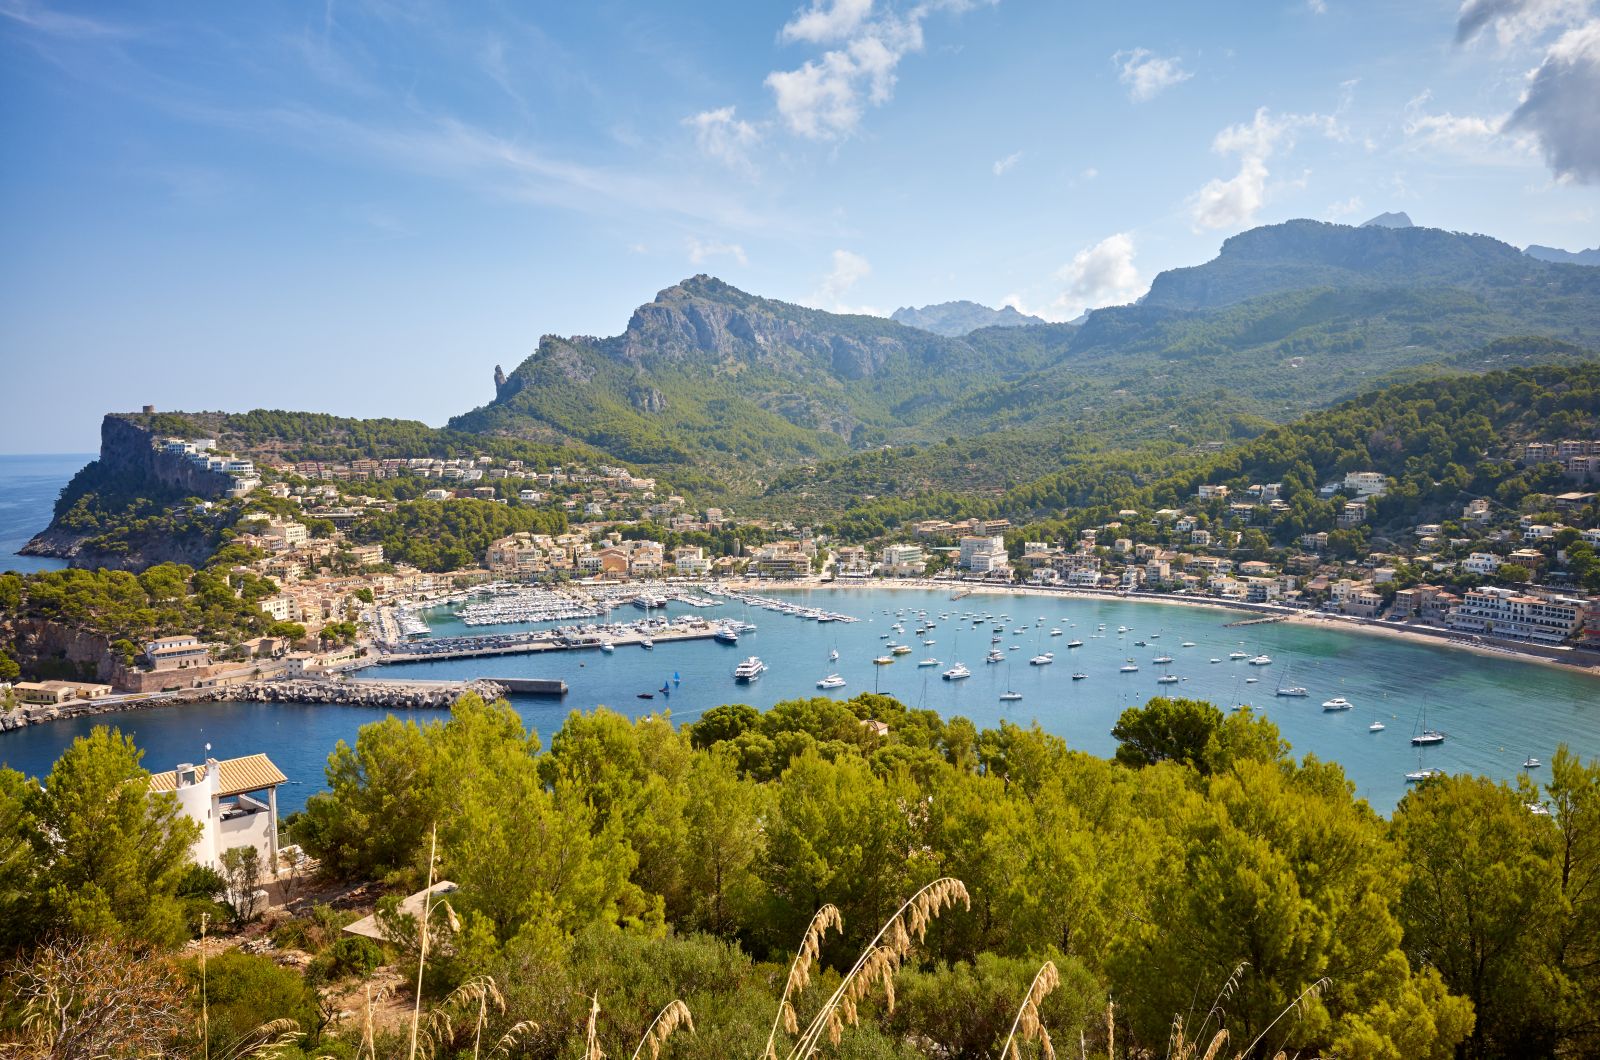 Port de Soller ist der einzige geschützte Hafen im Nordwesten Mallorcas. Bei ruhigem Wetter ist dieser natürliche Teil der Küste für erfahrene Segler sehr lohnenswert. ©Maciej Bledowski/AdobeStock